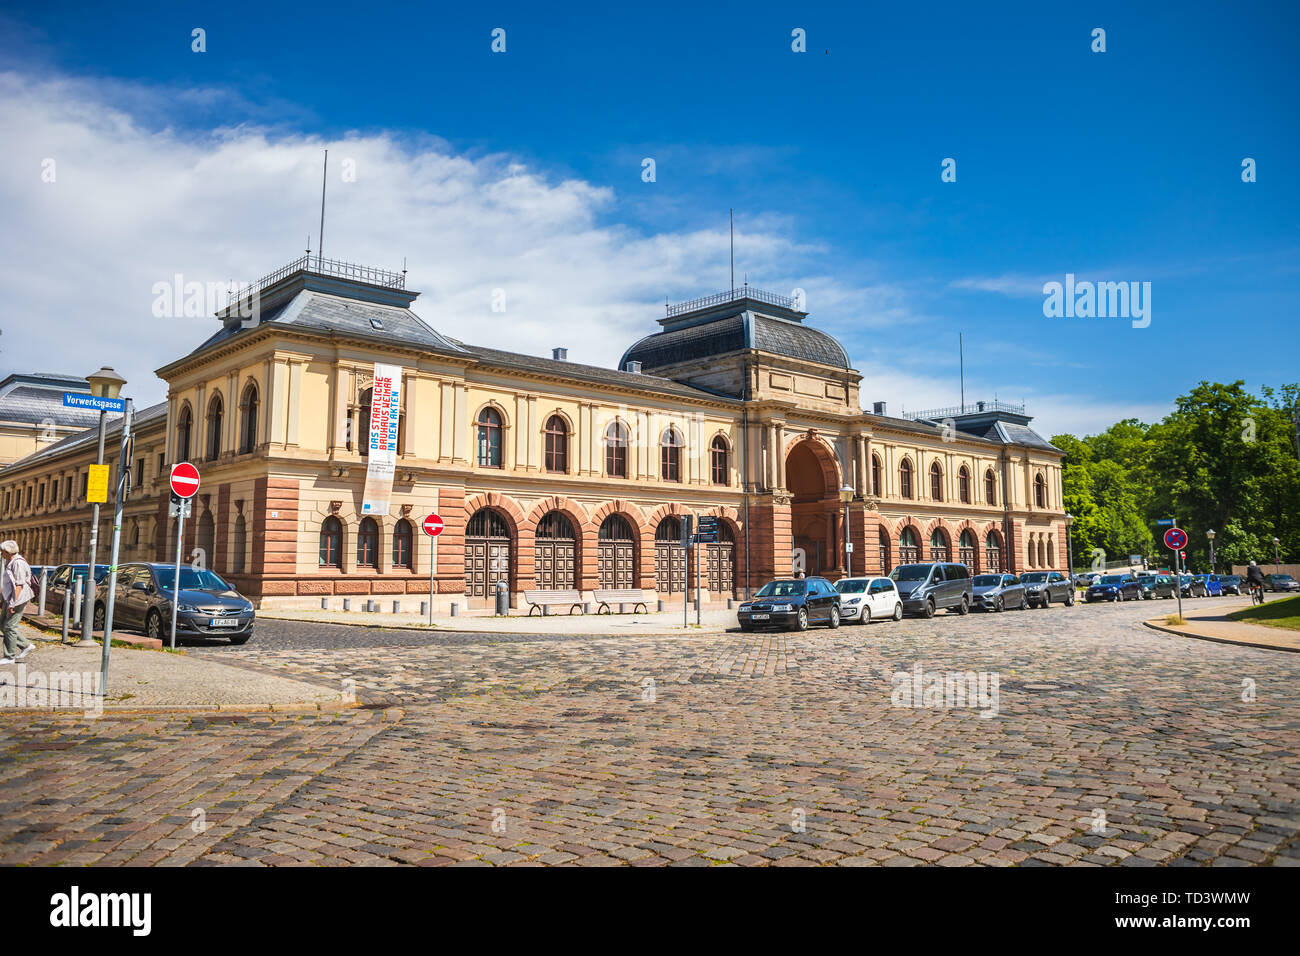 WEIMAR, Germania - circa luglio, 2019: Turingia centrale dell'archivio di stato di Weimar in Turingia, Germania Foto Stock